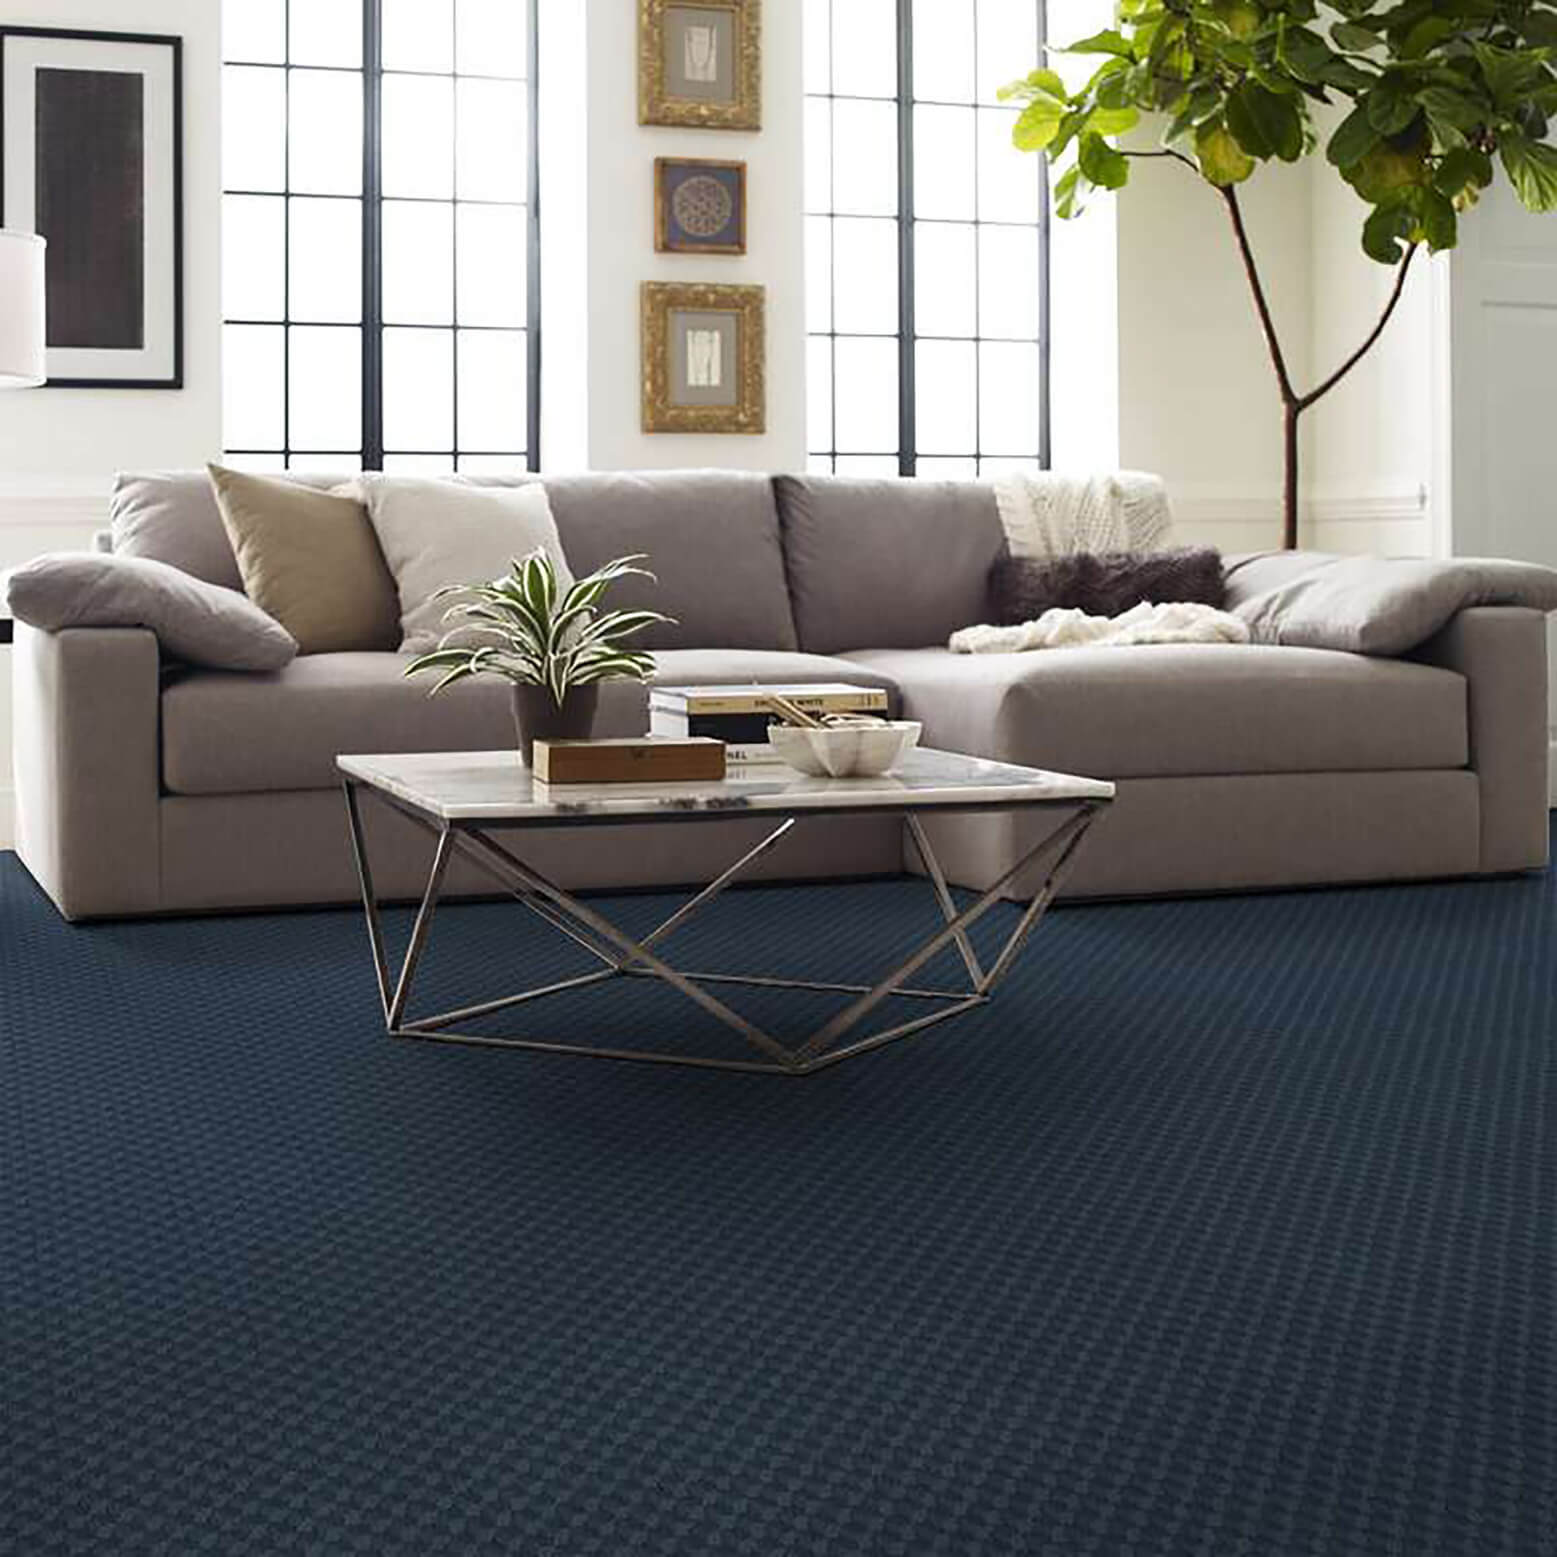 nylon carpet in living room 